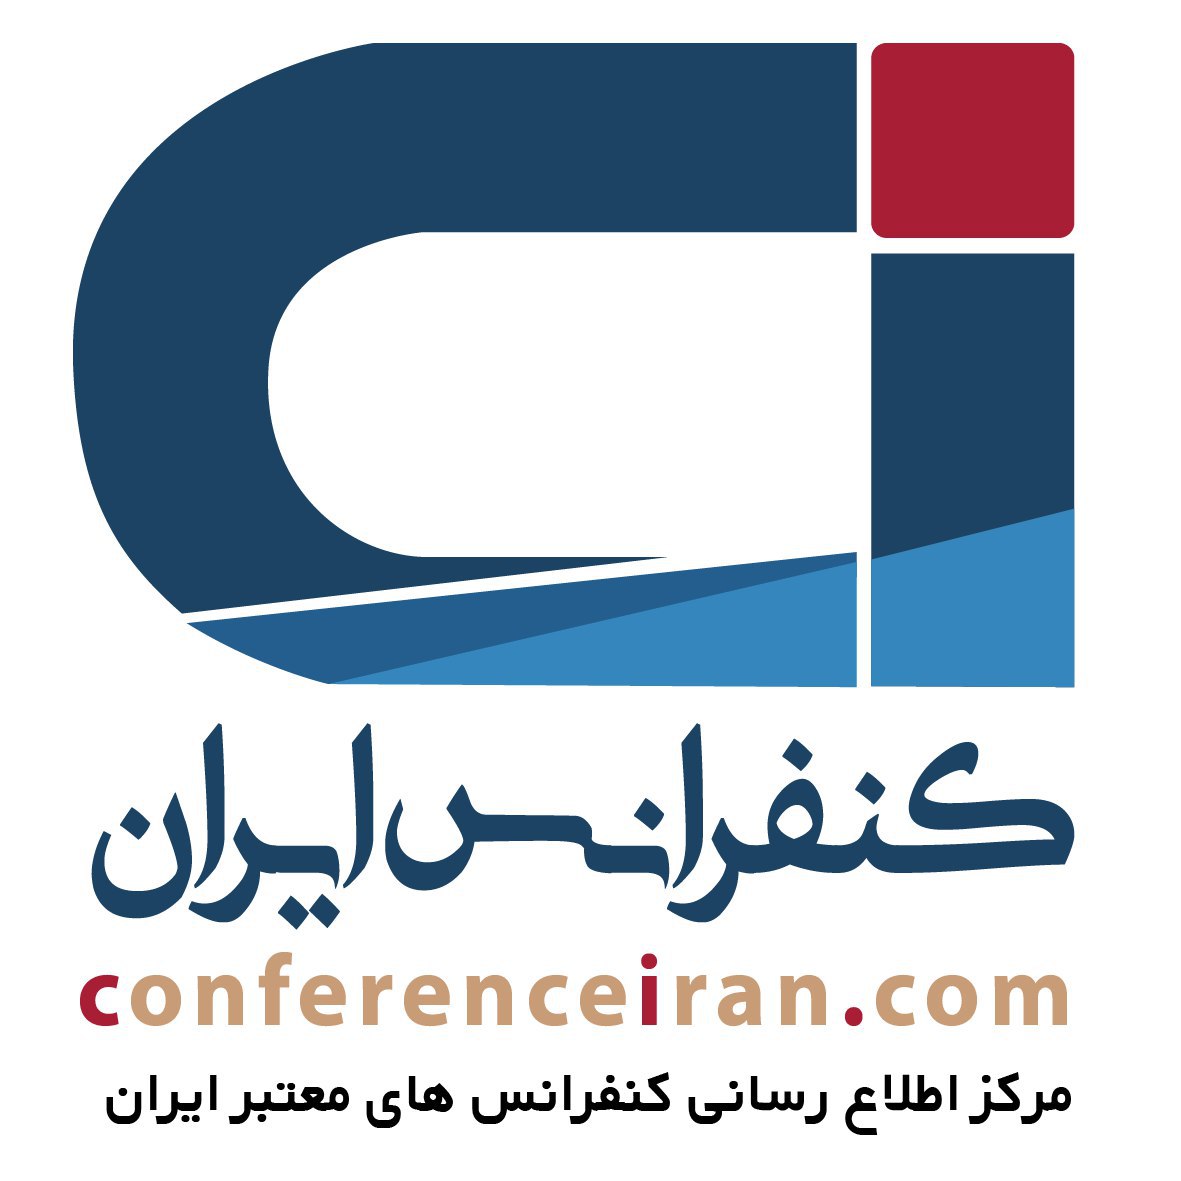 مرکز اطلاع رسانی کنفرانس های معتبر ایران